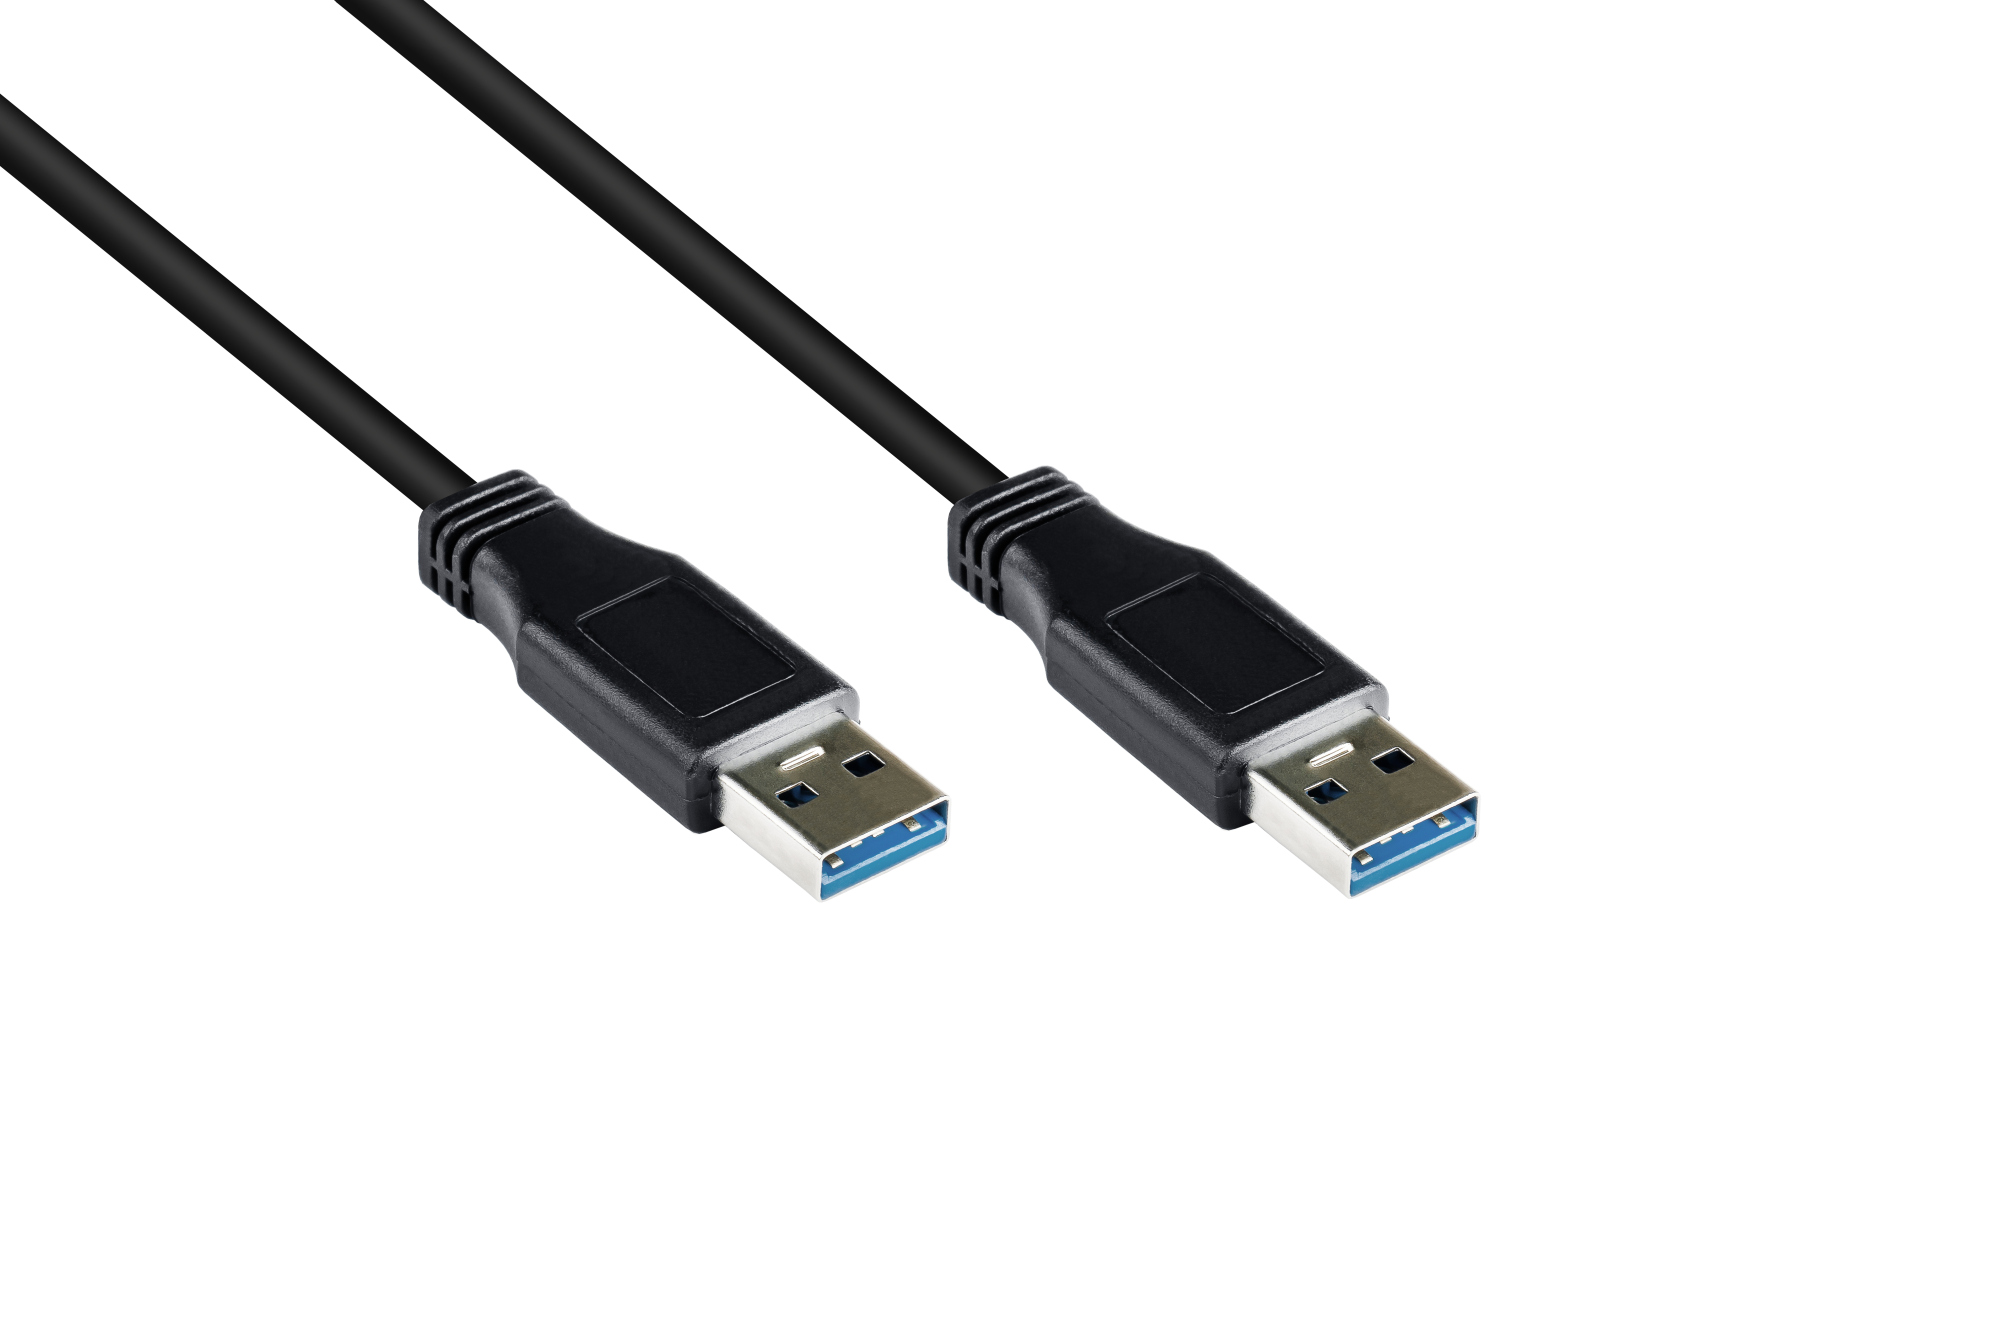 Anschlusskabel USB 3.0 Stecker A an Stecker A, schwarz, 0,5m, Good Connections®